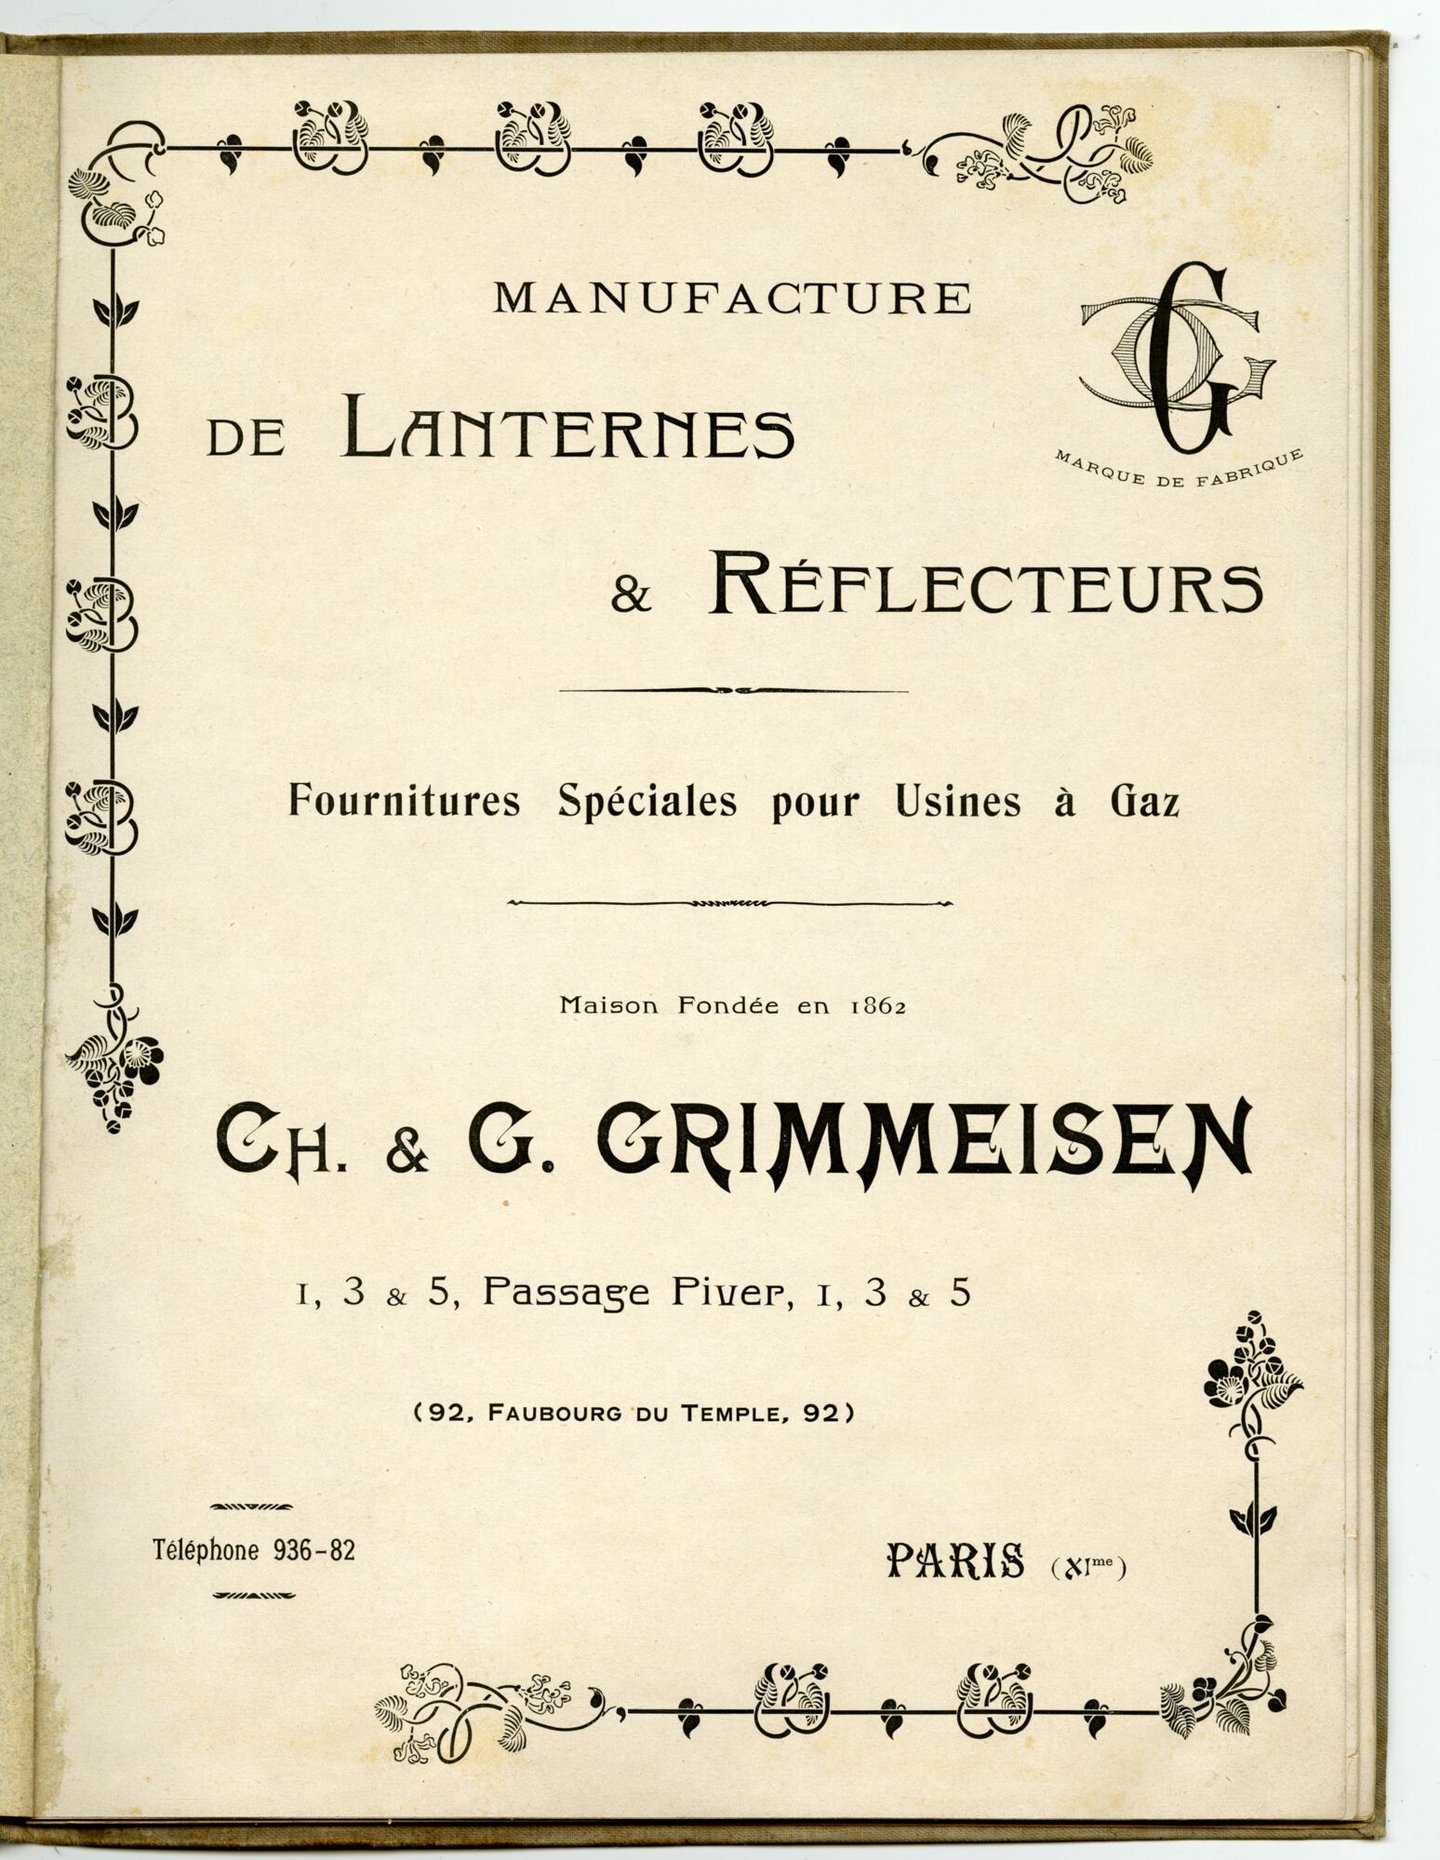 Productcatalogus met gaslantaarns en accessoires van het merk Grimmeisen